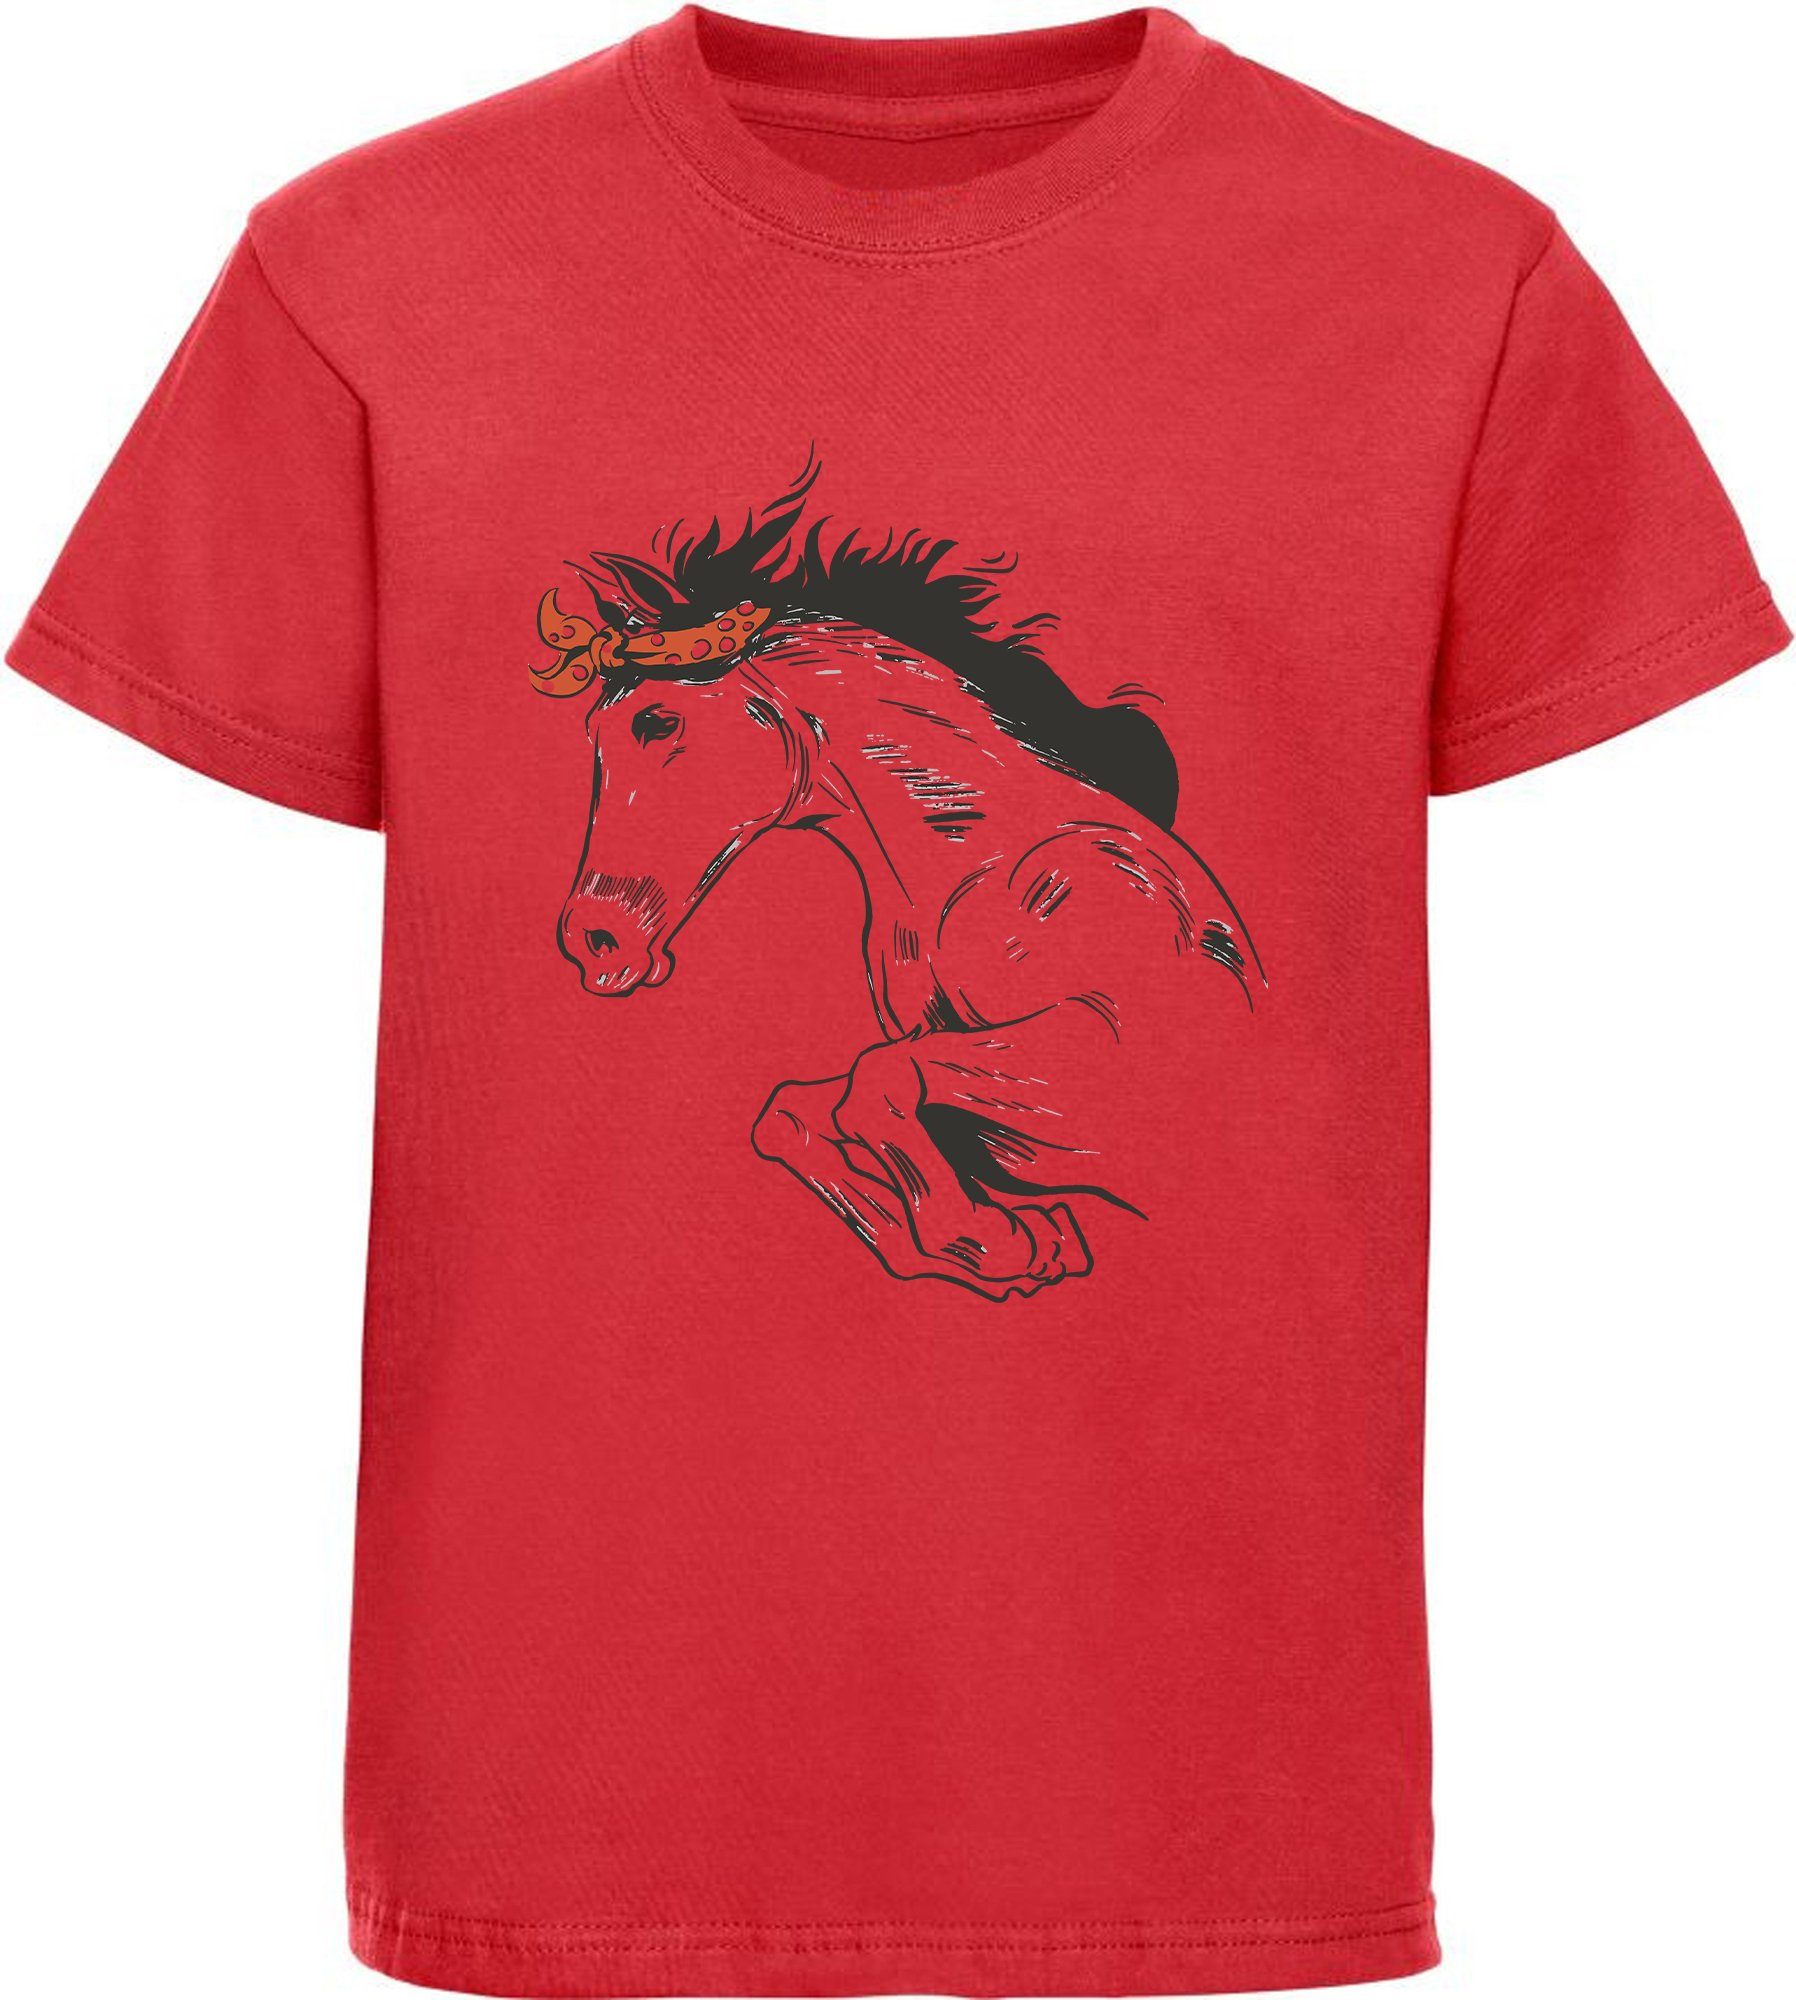 MyDesign24 Print-Shirt bedrucktes Pferde T-Shirt - Springendes Pferd mit Kopftuch Baumwollshirt mit Aufdruck, i170 rot